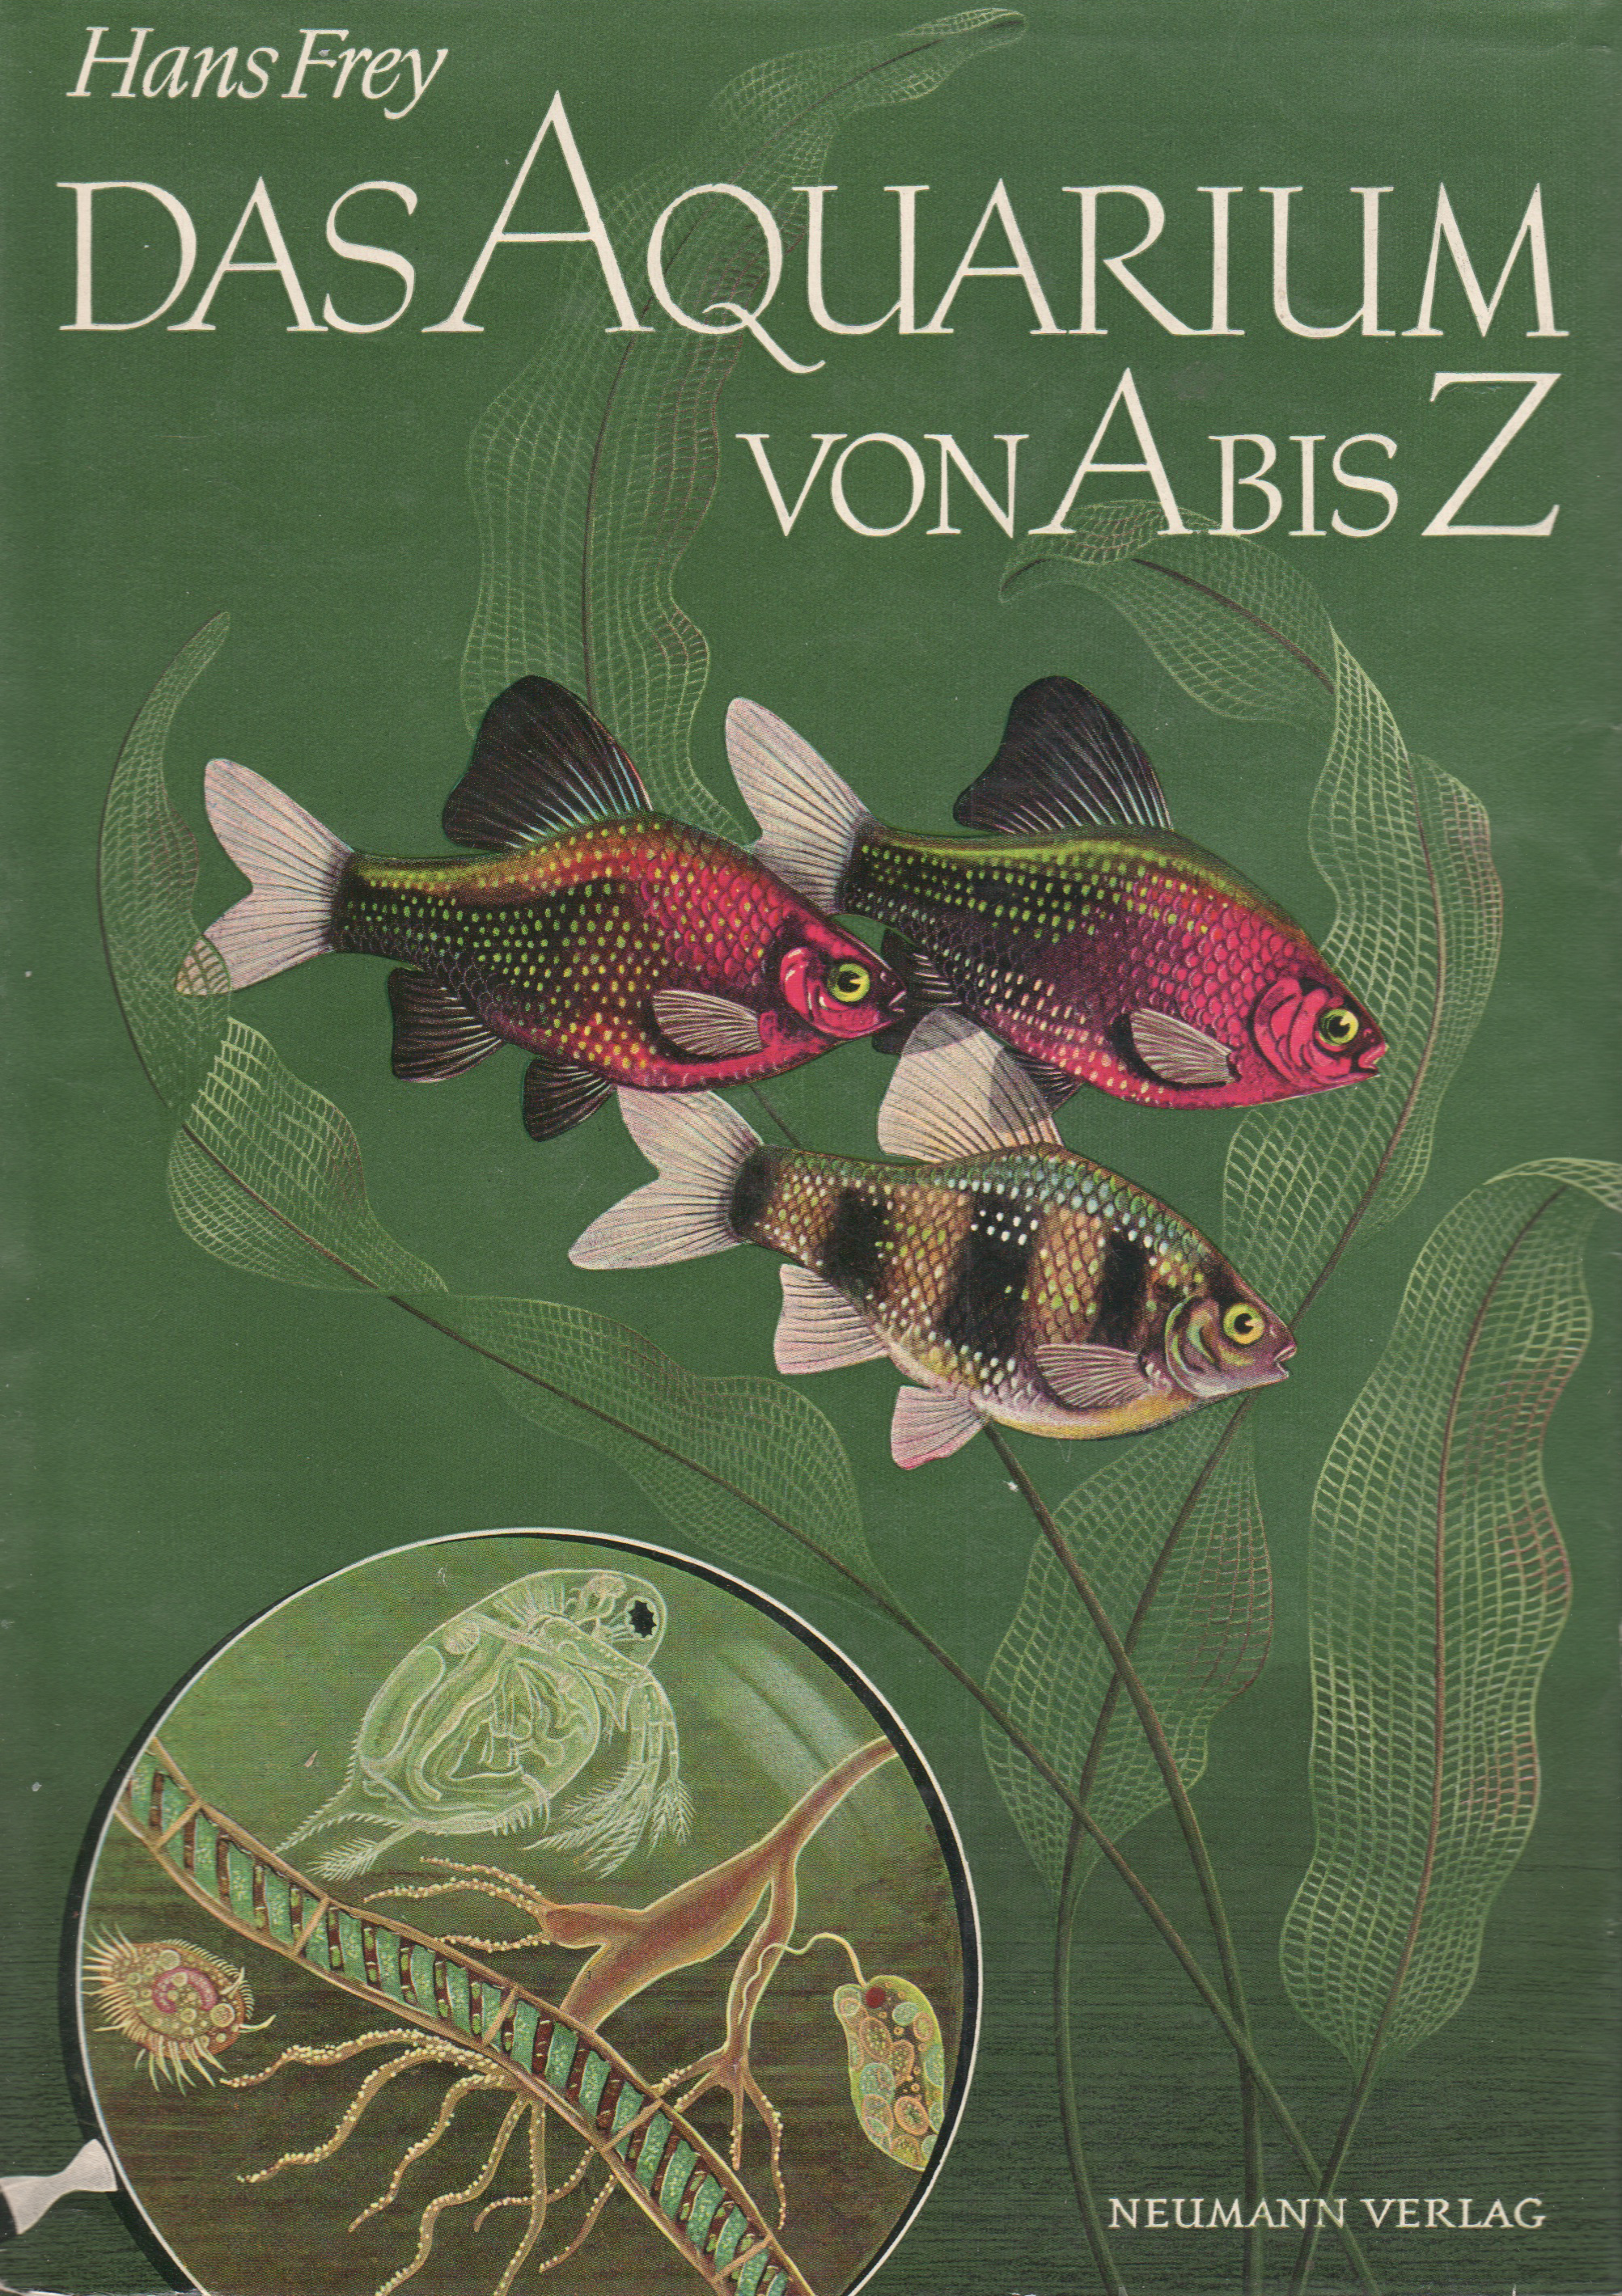 Das Aquarium von A bis Z (Hans Frey)